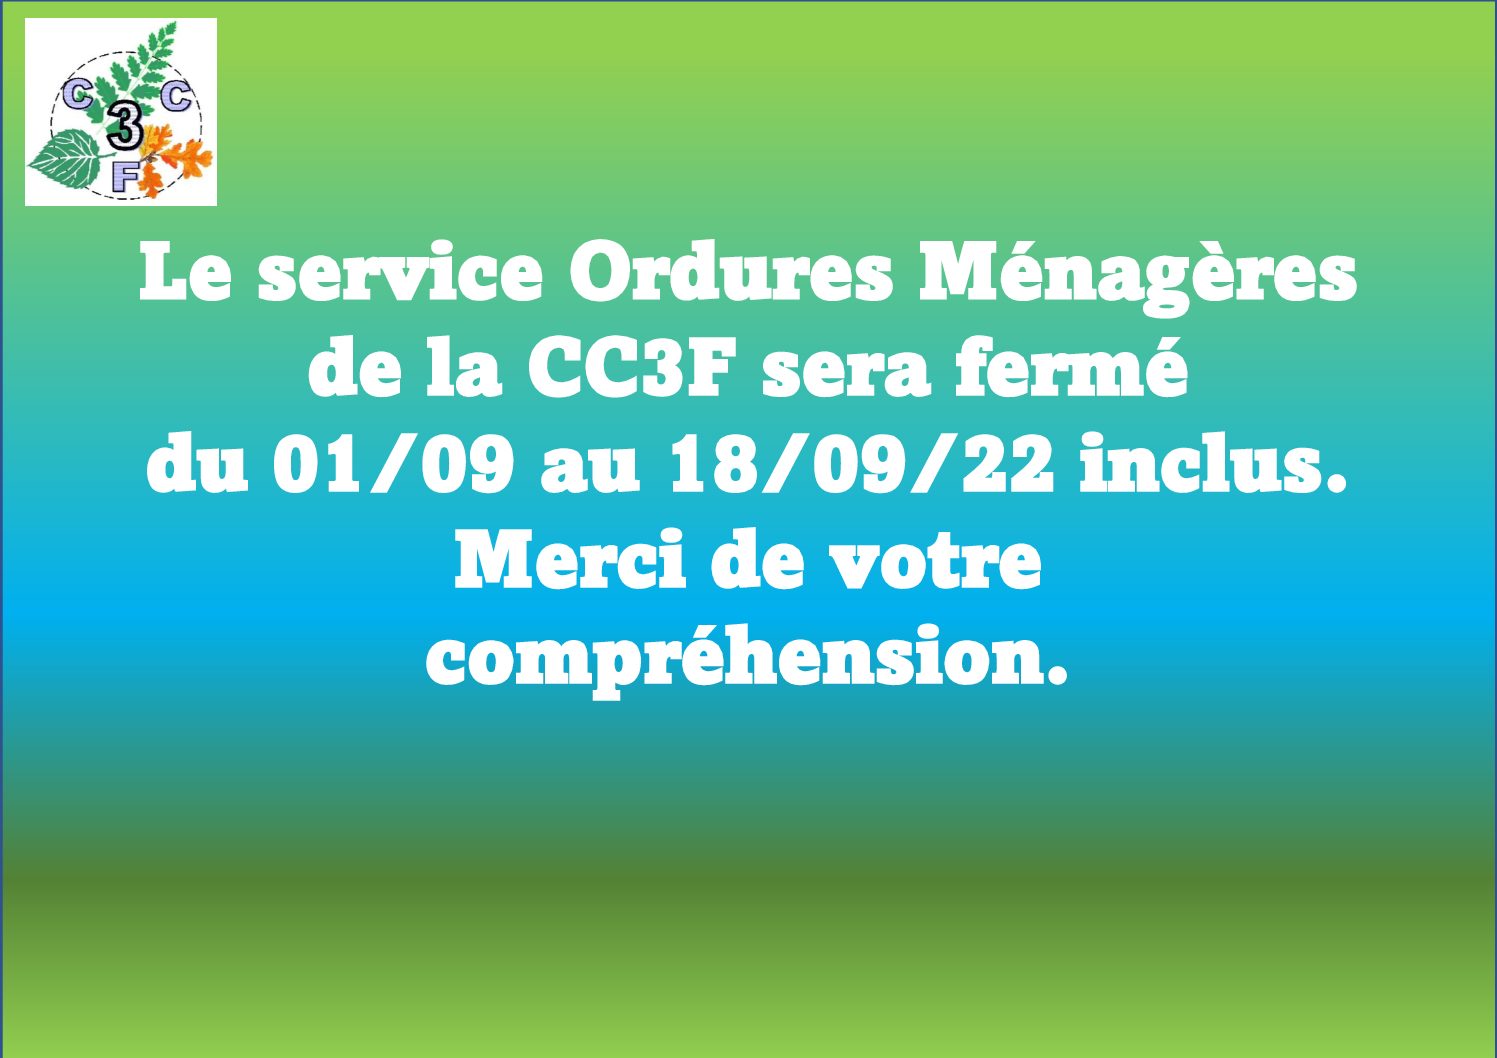 Le service ordures ménagères de la C.C.3.F. sera fermé du 01/09 au 18/09/22 inclus